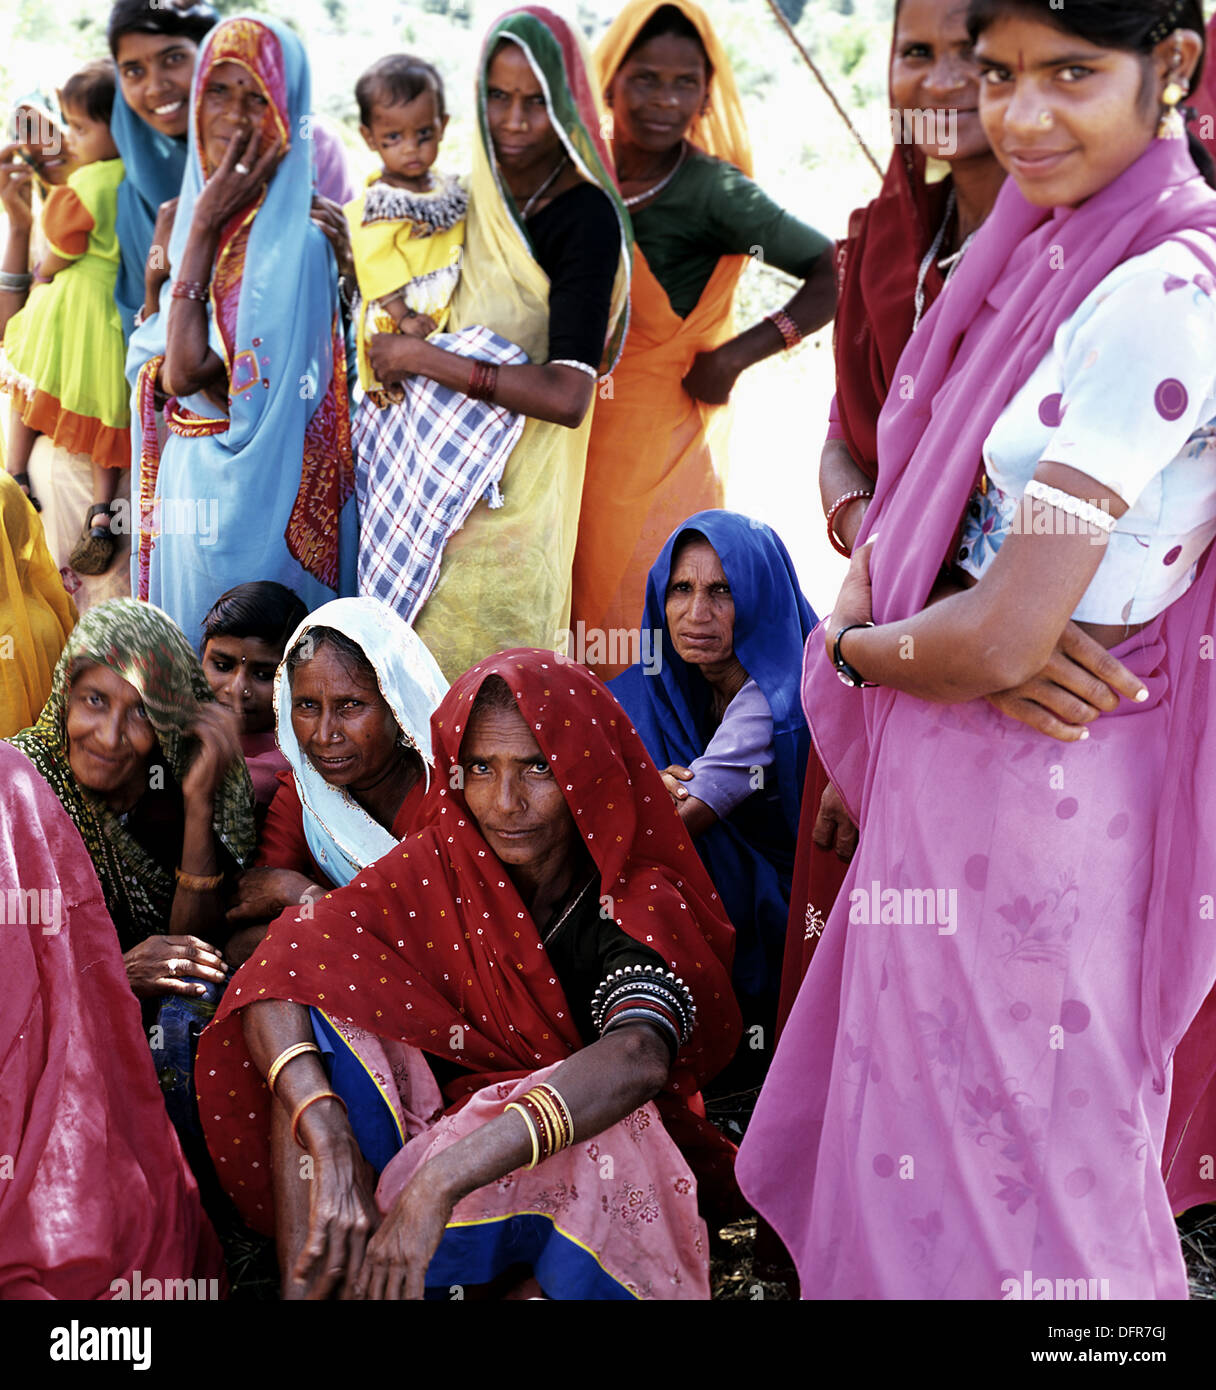 Les femmes de la tribu Bhils regarder le photographe. Le Rajasthan, Inde Banque D'Images